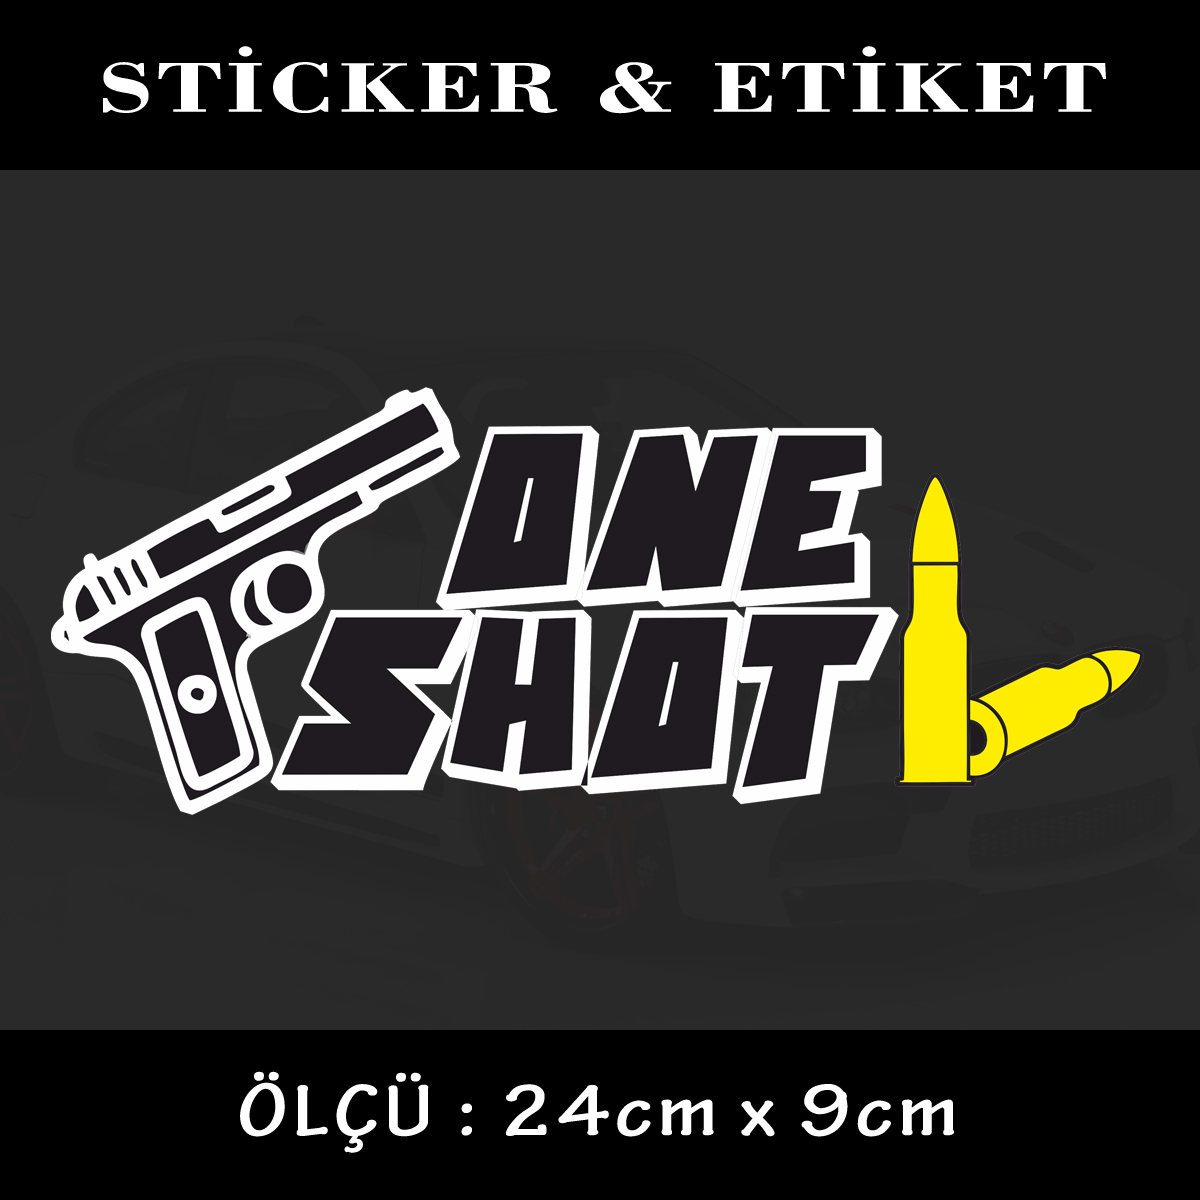 ONE SHHOT - One shot sticker